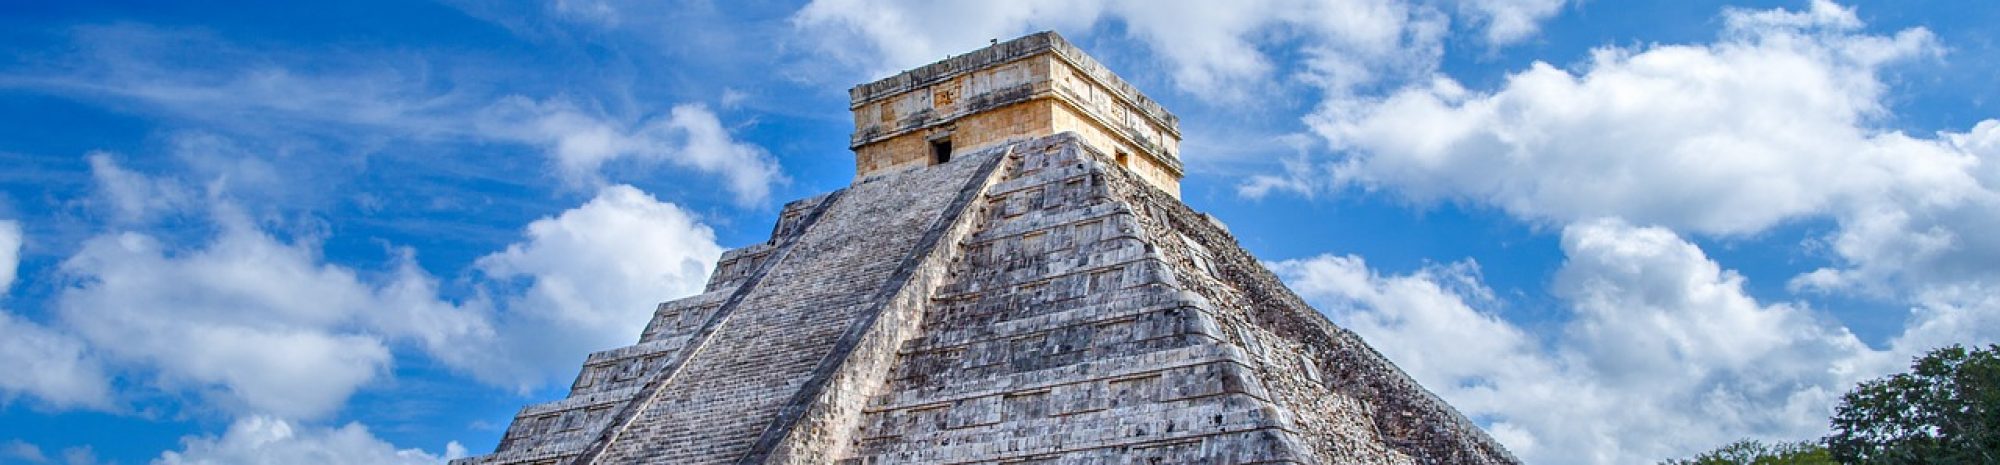 Les agences mexicaines boycottent Chichén Itzá en raison d’une hausse de prix